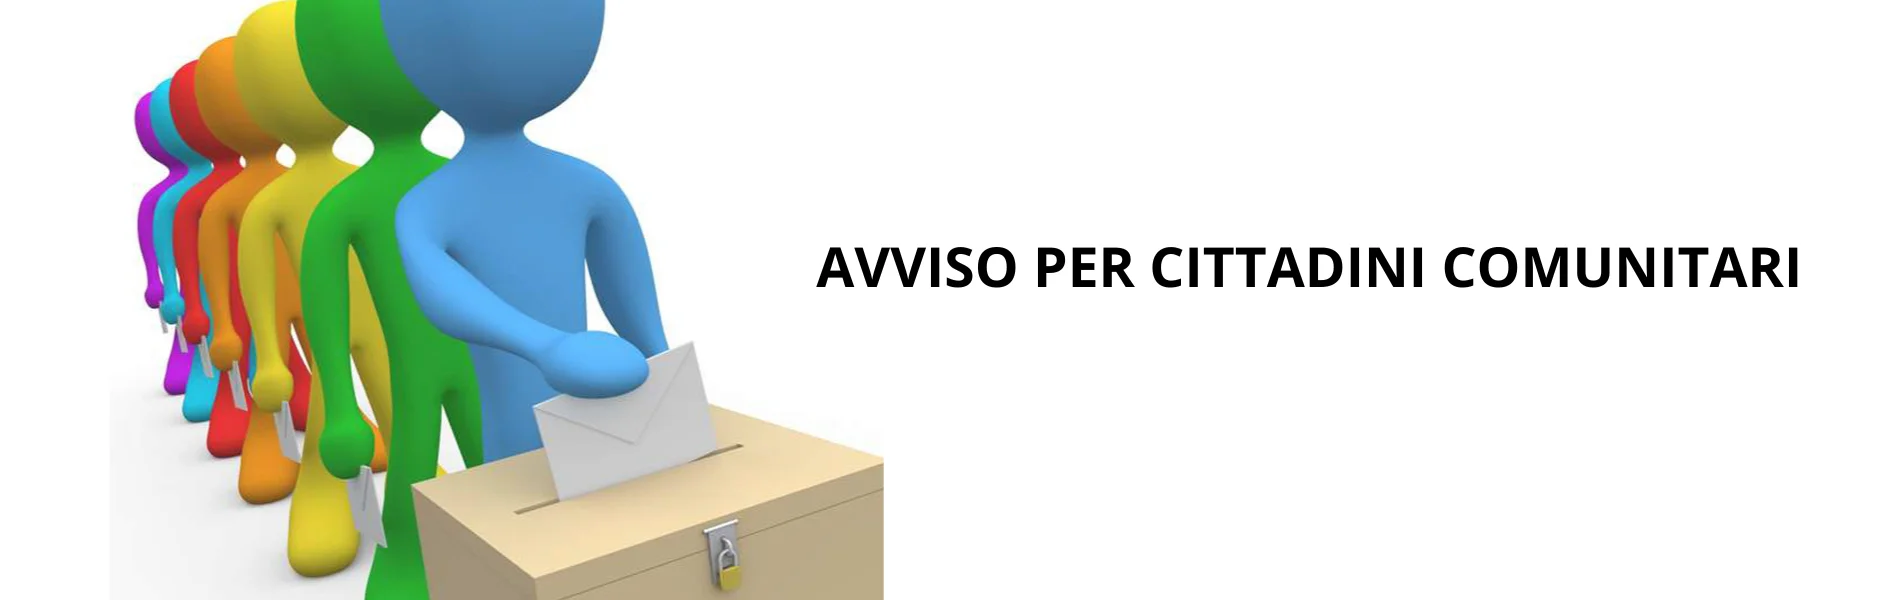 CITTADINI COMUNITARI ALLE URNE – Diritto di voto nelle Elezioni Comunali